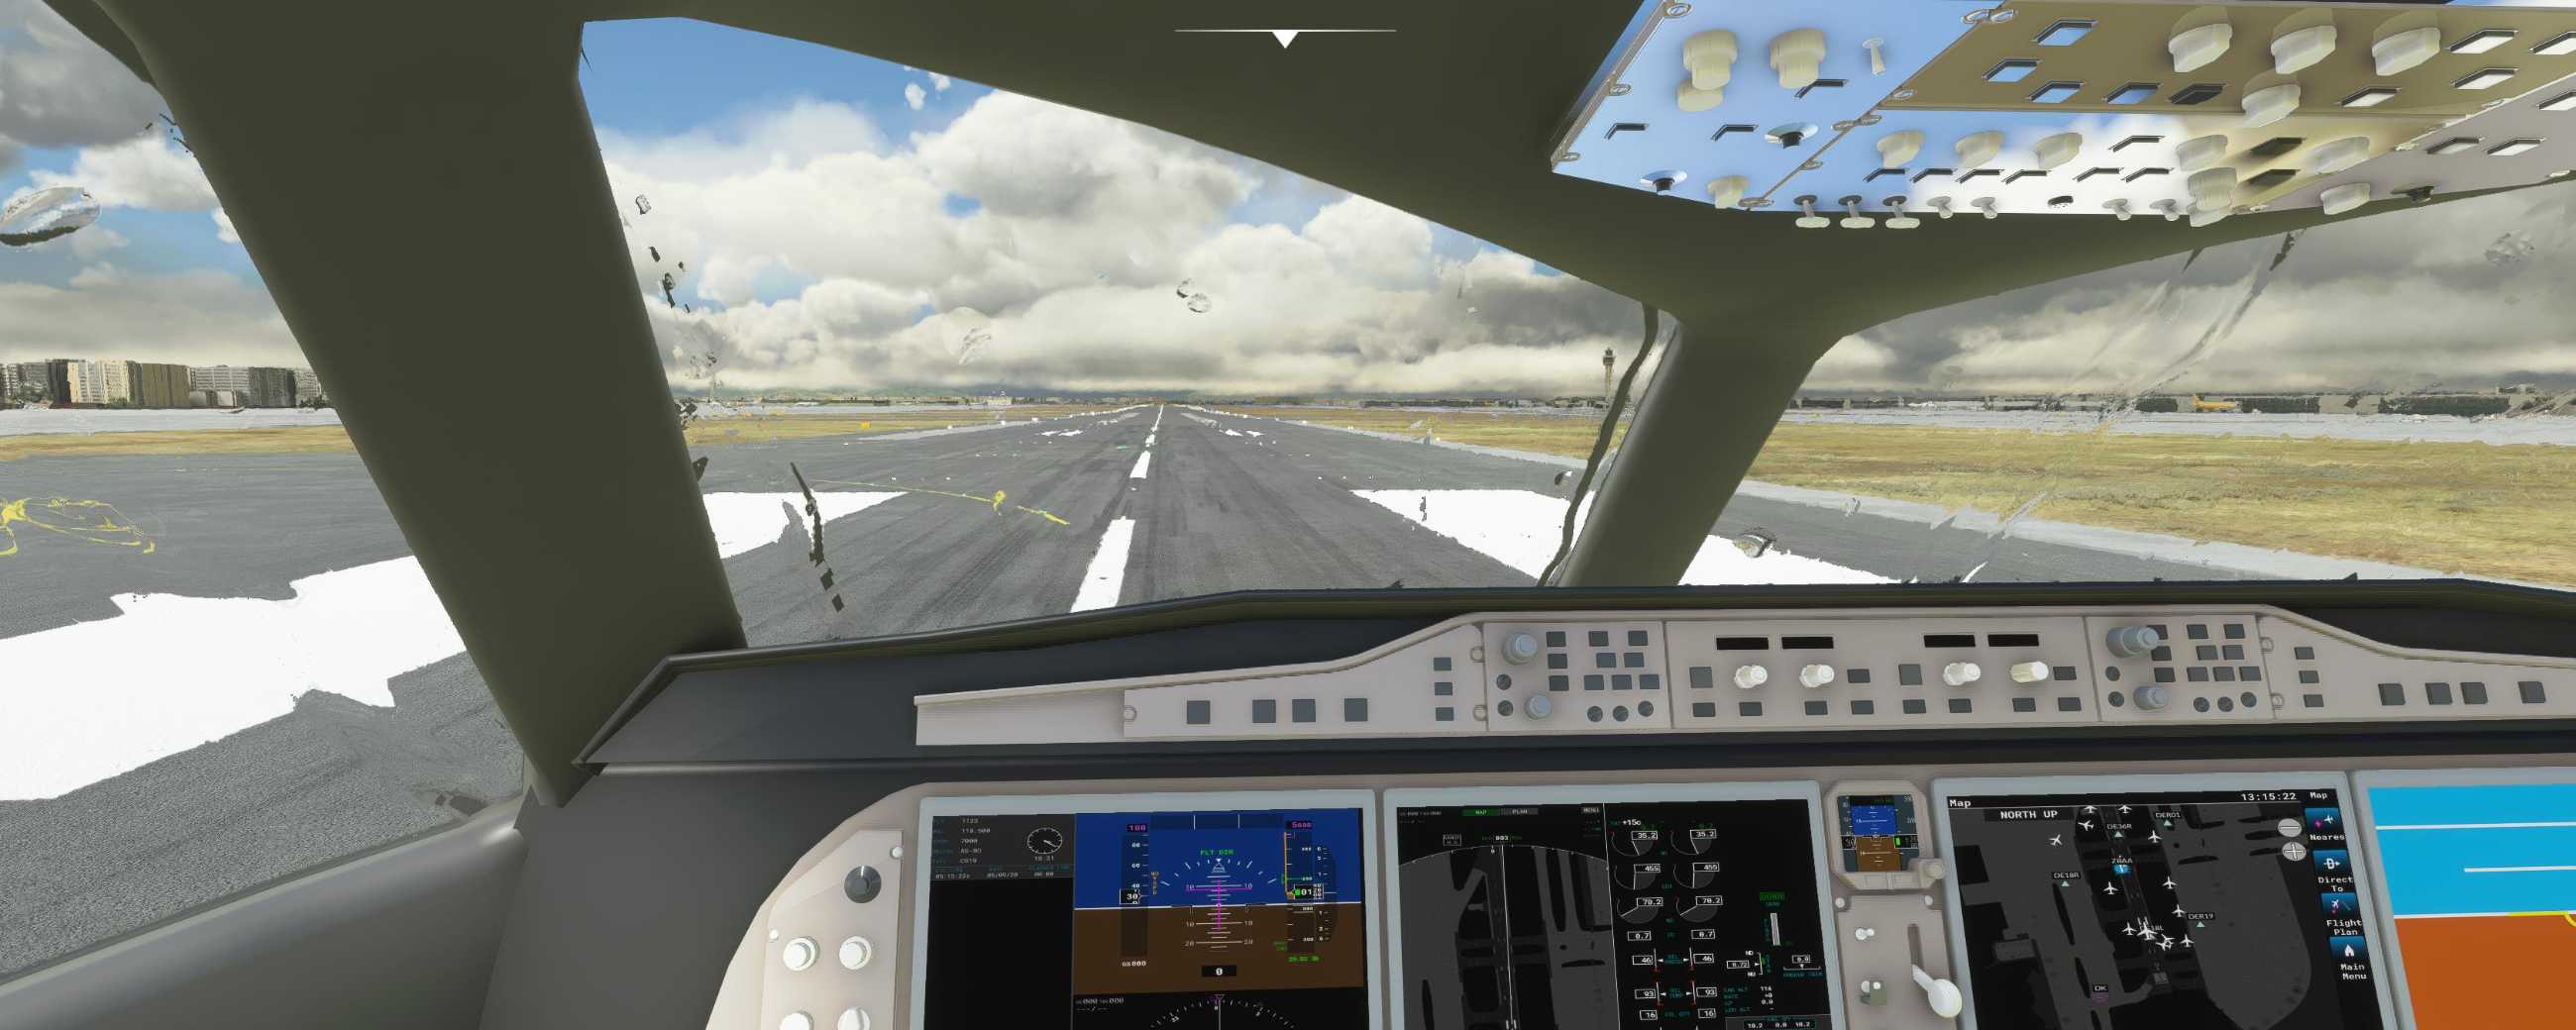 FYCYC-C919 国产大飞机机模 微软模拟飞行演示-1740 